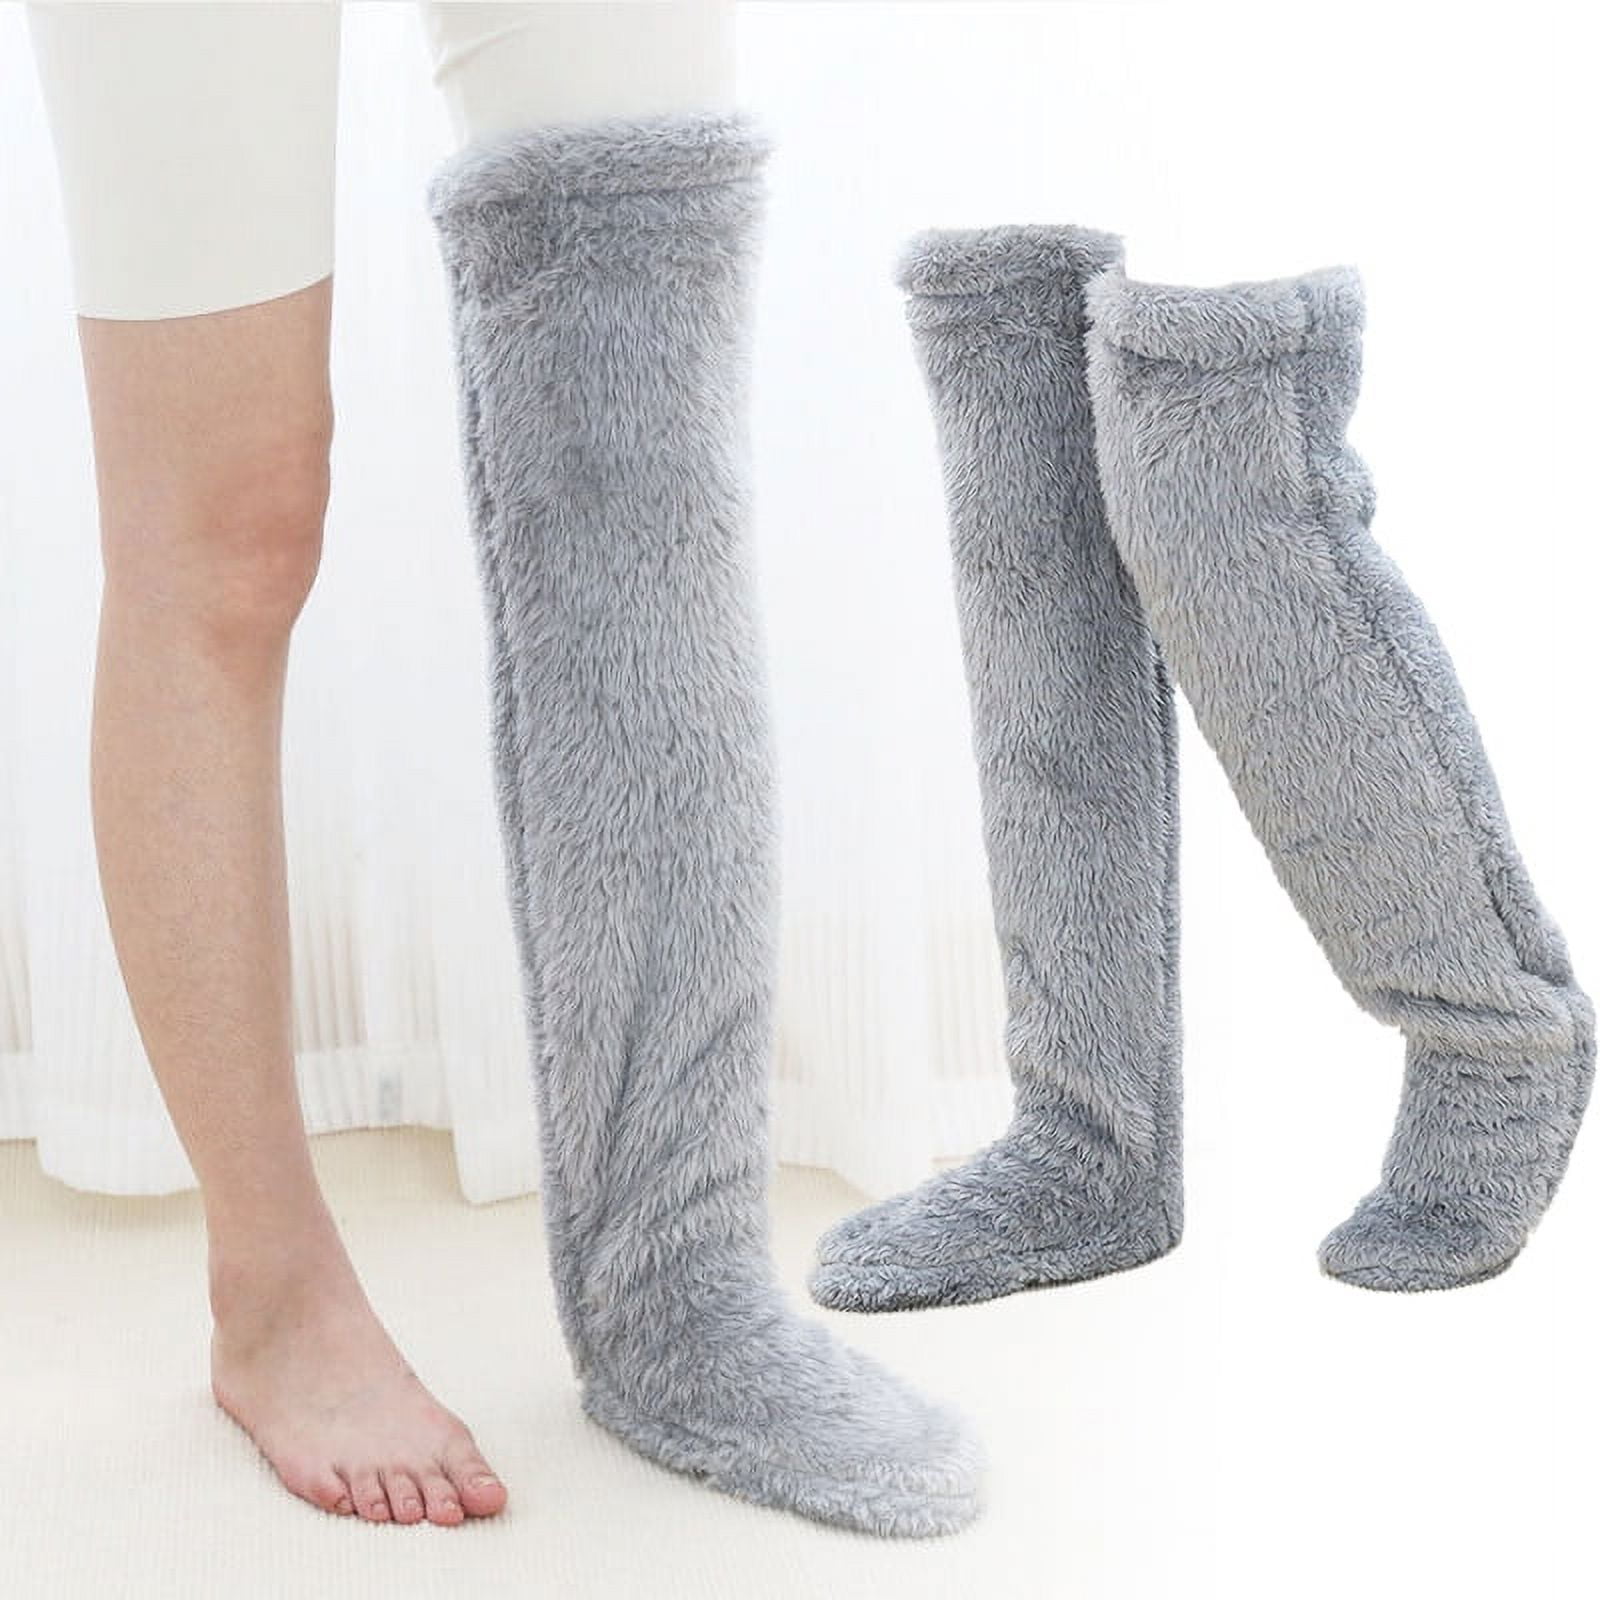 Snuggs Cozy Socks, Over Knee High Fluffy Socks Plush Slipper Stockings ...